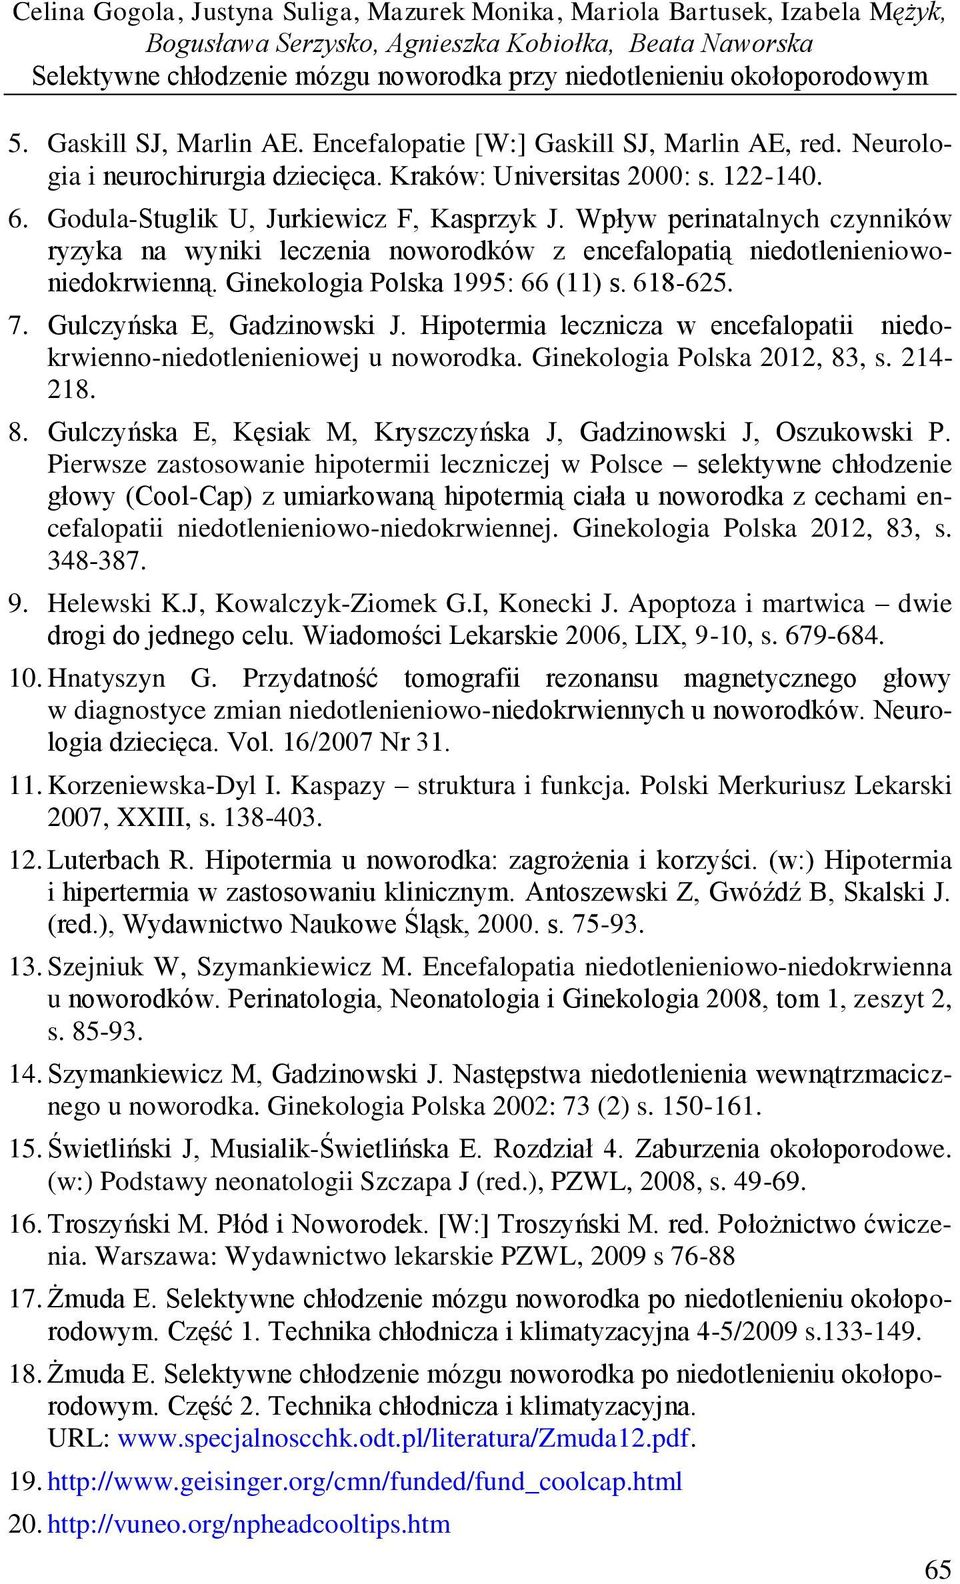 Godula-Stuglik U, Jurkiewicz F, Kasprzyk J. Wpływ perinatalnych czynników ryzyka na wyniki leczenia noworodków z encefalopatią niedotlenieniowoniedokrwienną. Ginekologia Polska 1995: 66 (11) s.